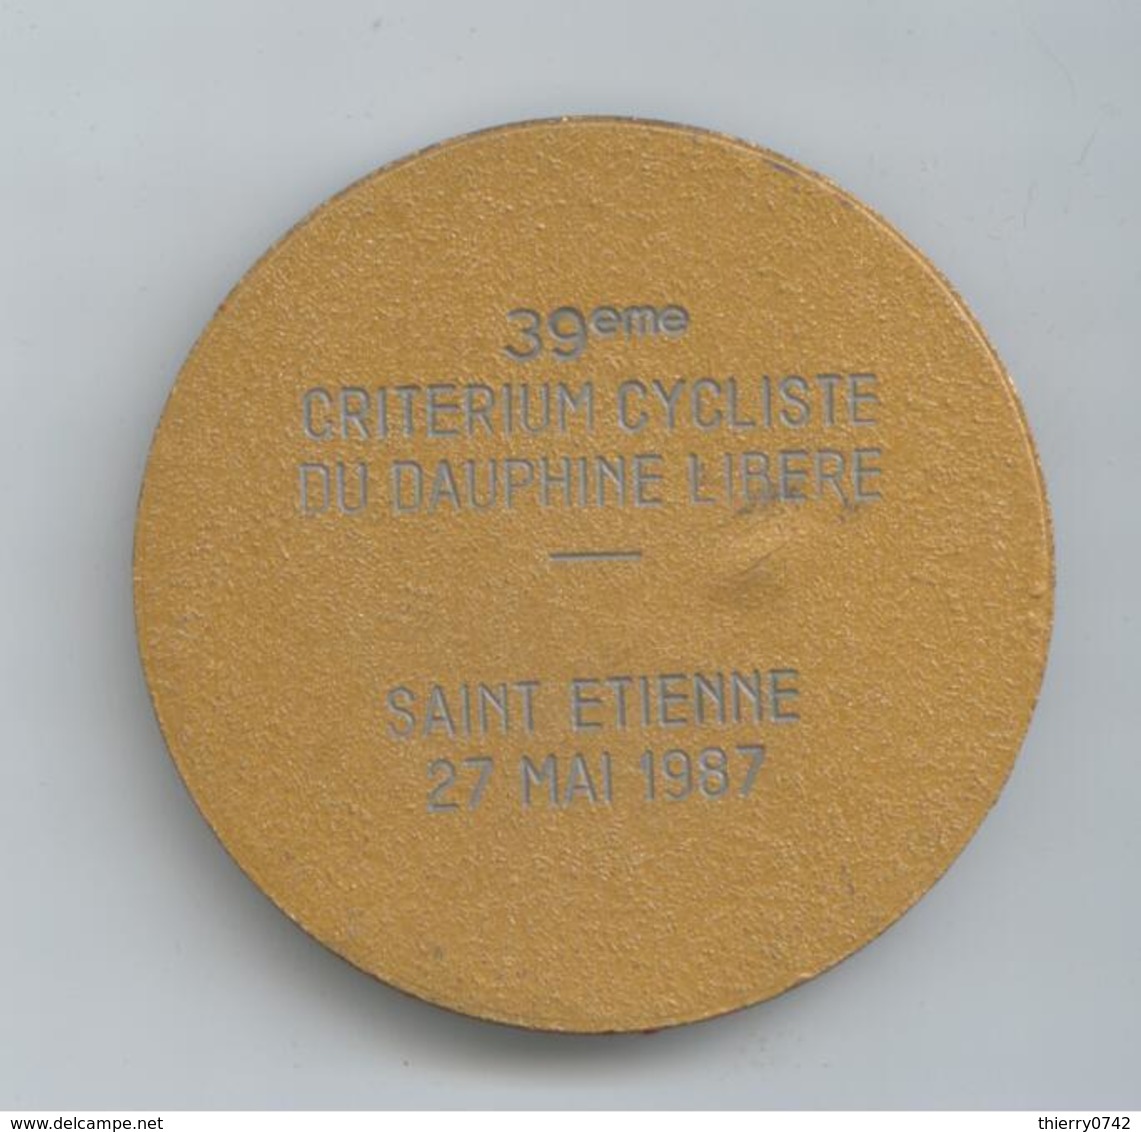 PLAQUE VELO CYCLISME 39 IEME CRITERIUM DAUPHINE LIBERE SAINT ETIENNE 1987 DETAILS - Ciclismo